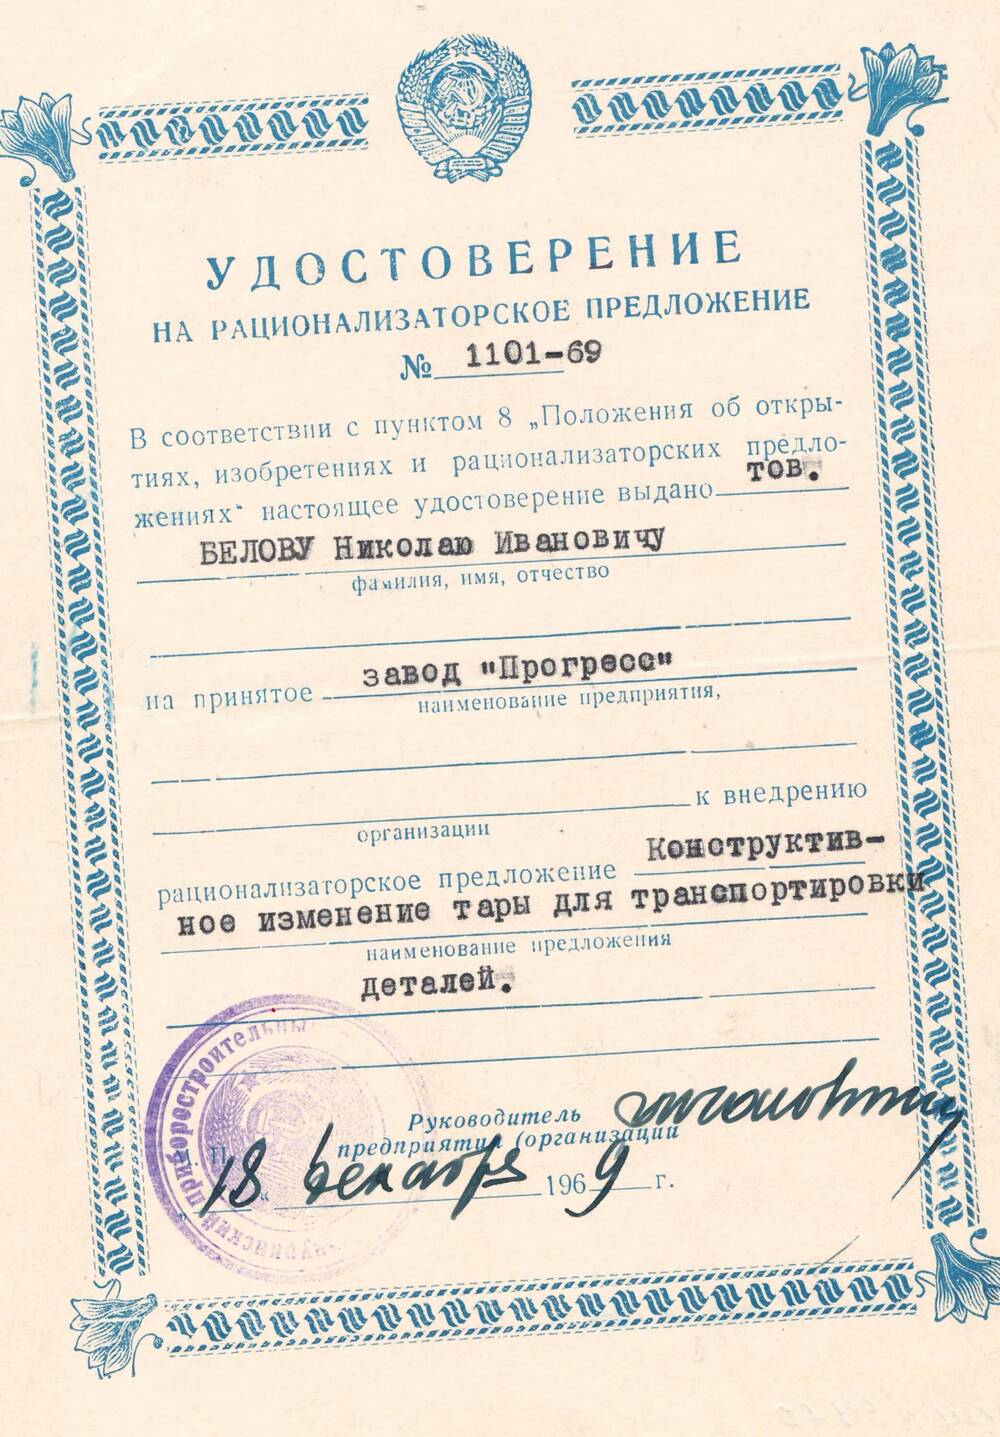 Удостоверение на рационализаторское предложение №1101-69 Белова Николая Ивановича